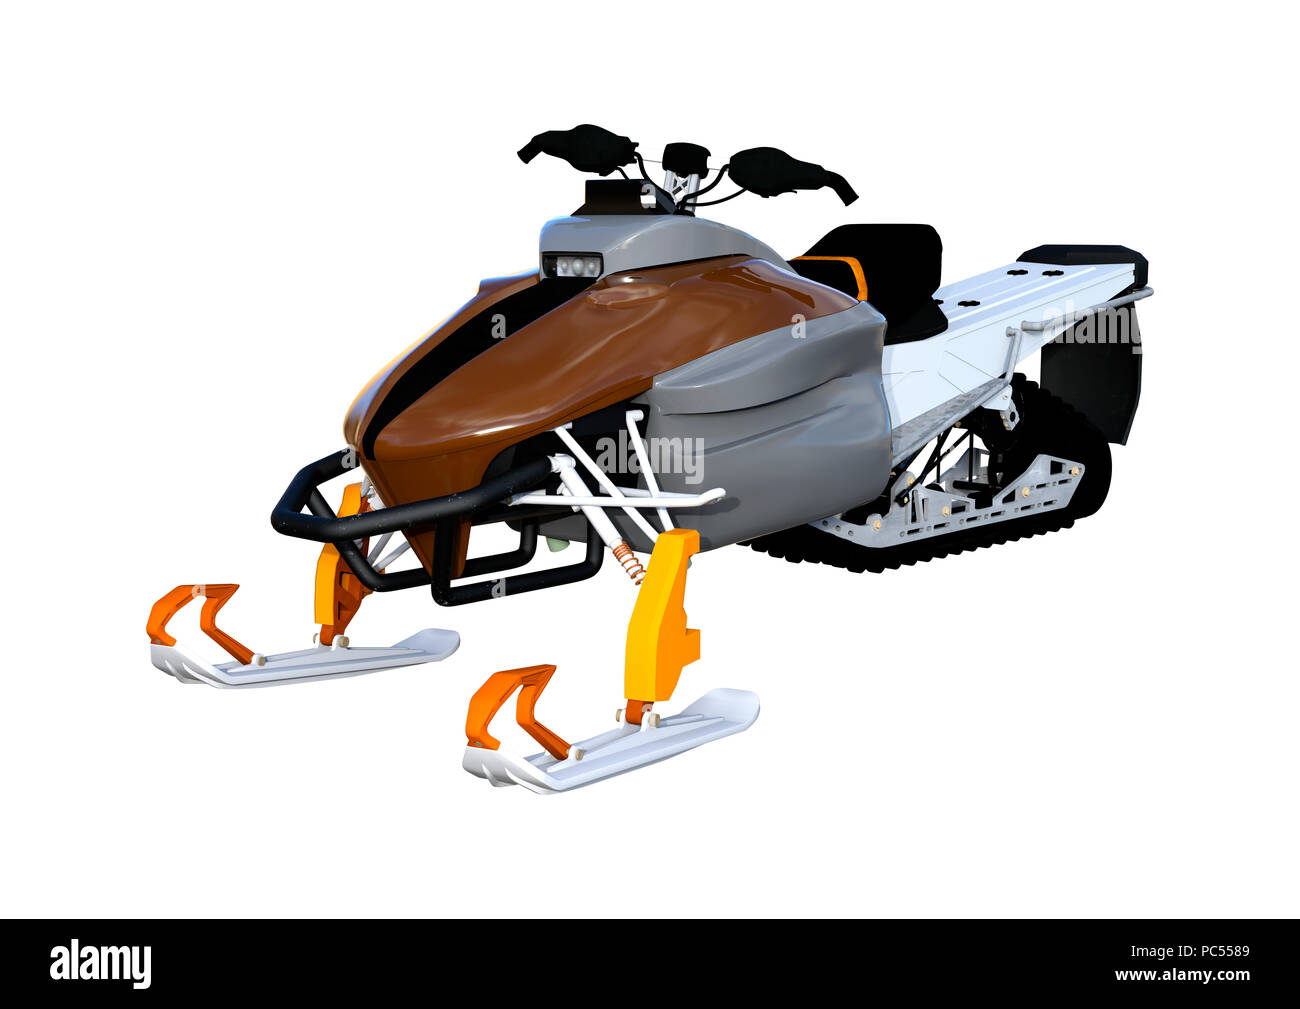 https://c8.alamy.com/compde/pc5589/3d-rendering-von-einem-schneemobil-oder-motor-schlitten-schlitten-oder-snowmachine-ein-motorisiertes-fahrzeug-fur-den-winter-reisen-auf-weissem-hintergrund-pc5589.jpg